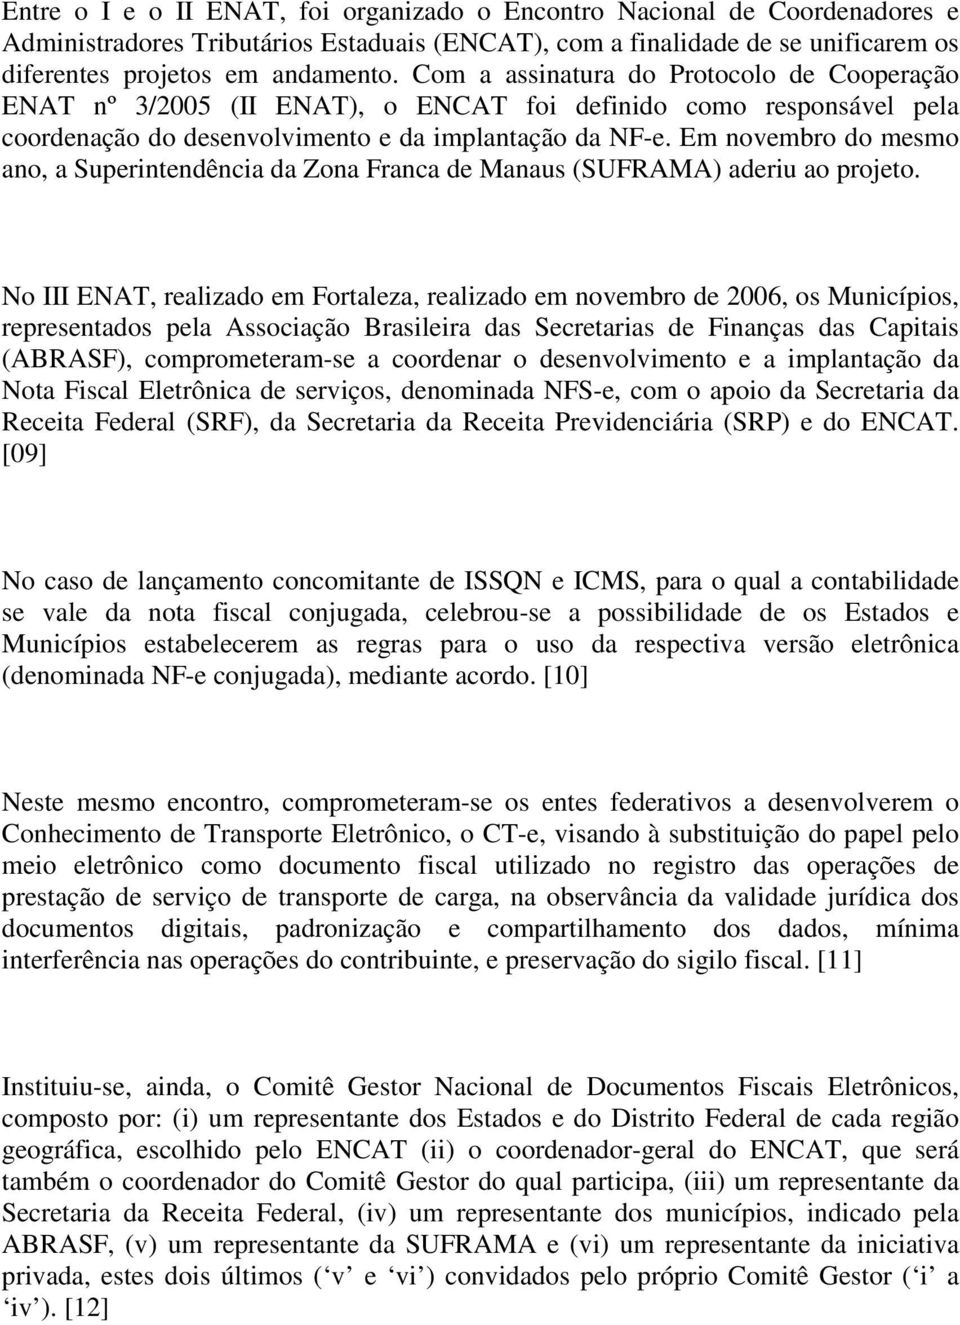 Em novembro do mesmo ano, a Superintendência da Zona Franca de Manaus (SUFRAMA) aderiu ao projeto.